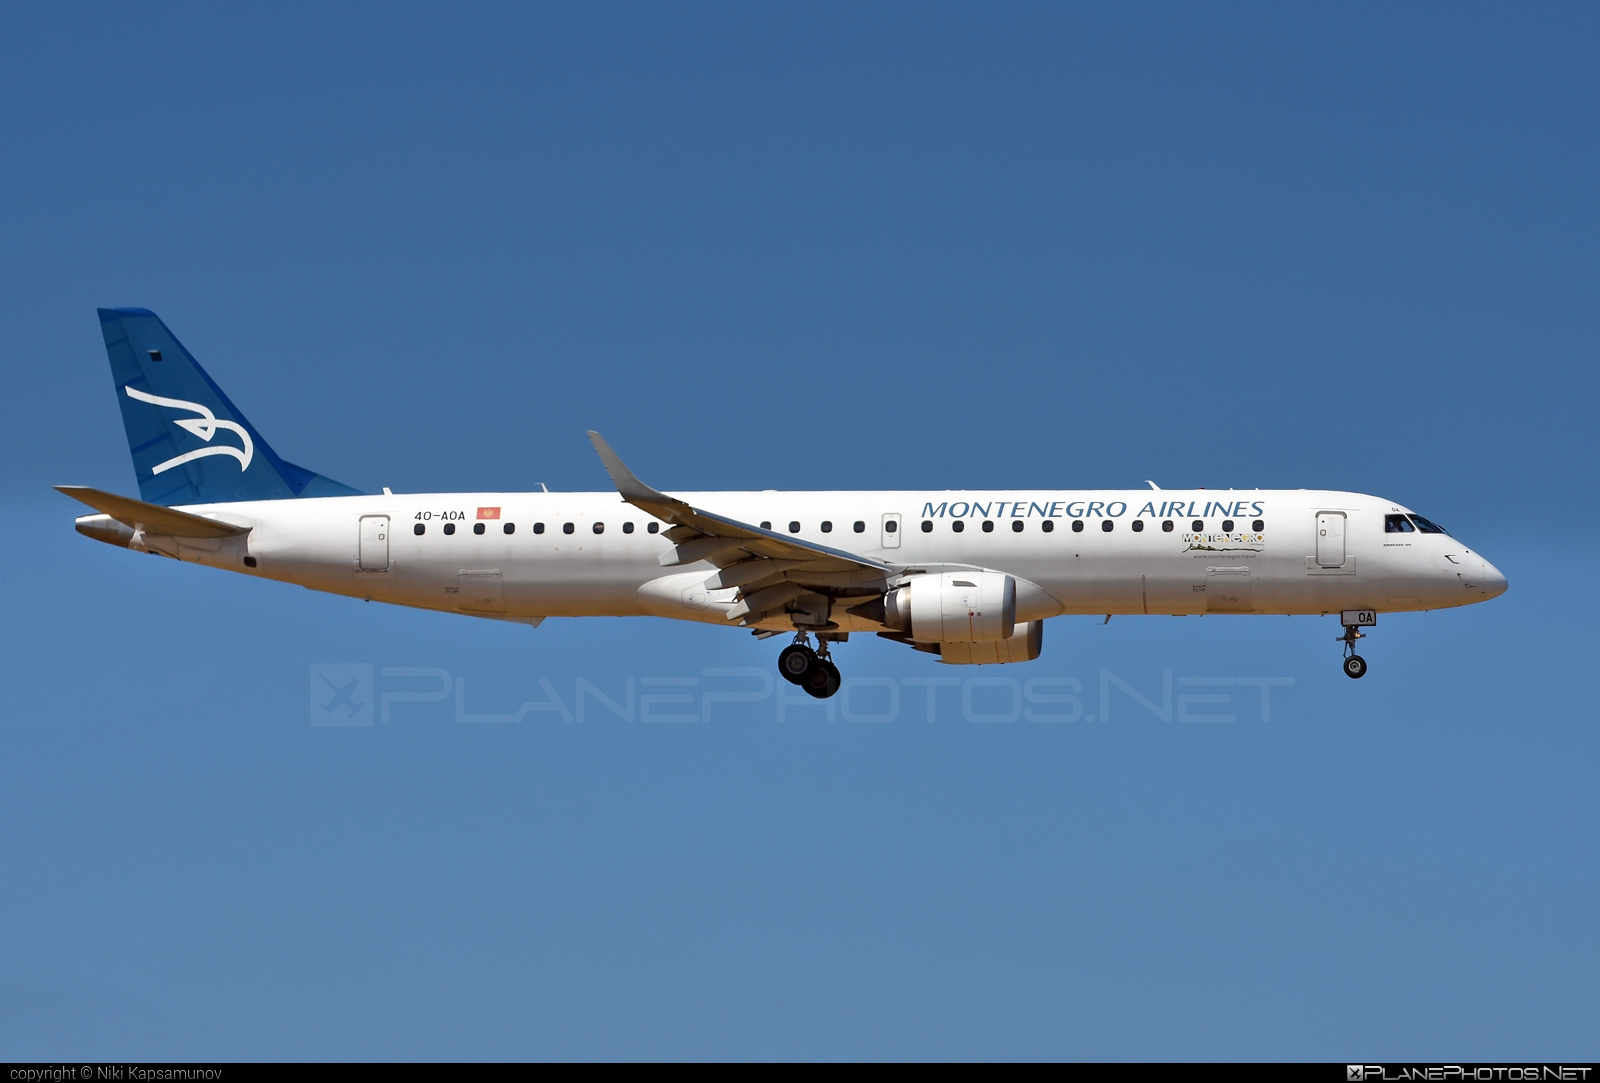 Embraer E195LR (ERJ-190-200LR) - 4O-AOA operated by Montenegro Airlines #MontenegroAirlines #e190 #e190200 #e190200lr #e195lr #embraer #embraer190200lr #embraer195 #embraer195lr